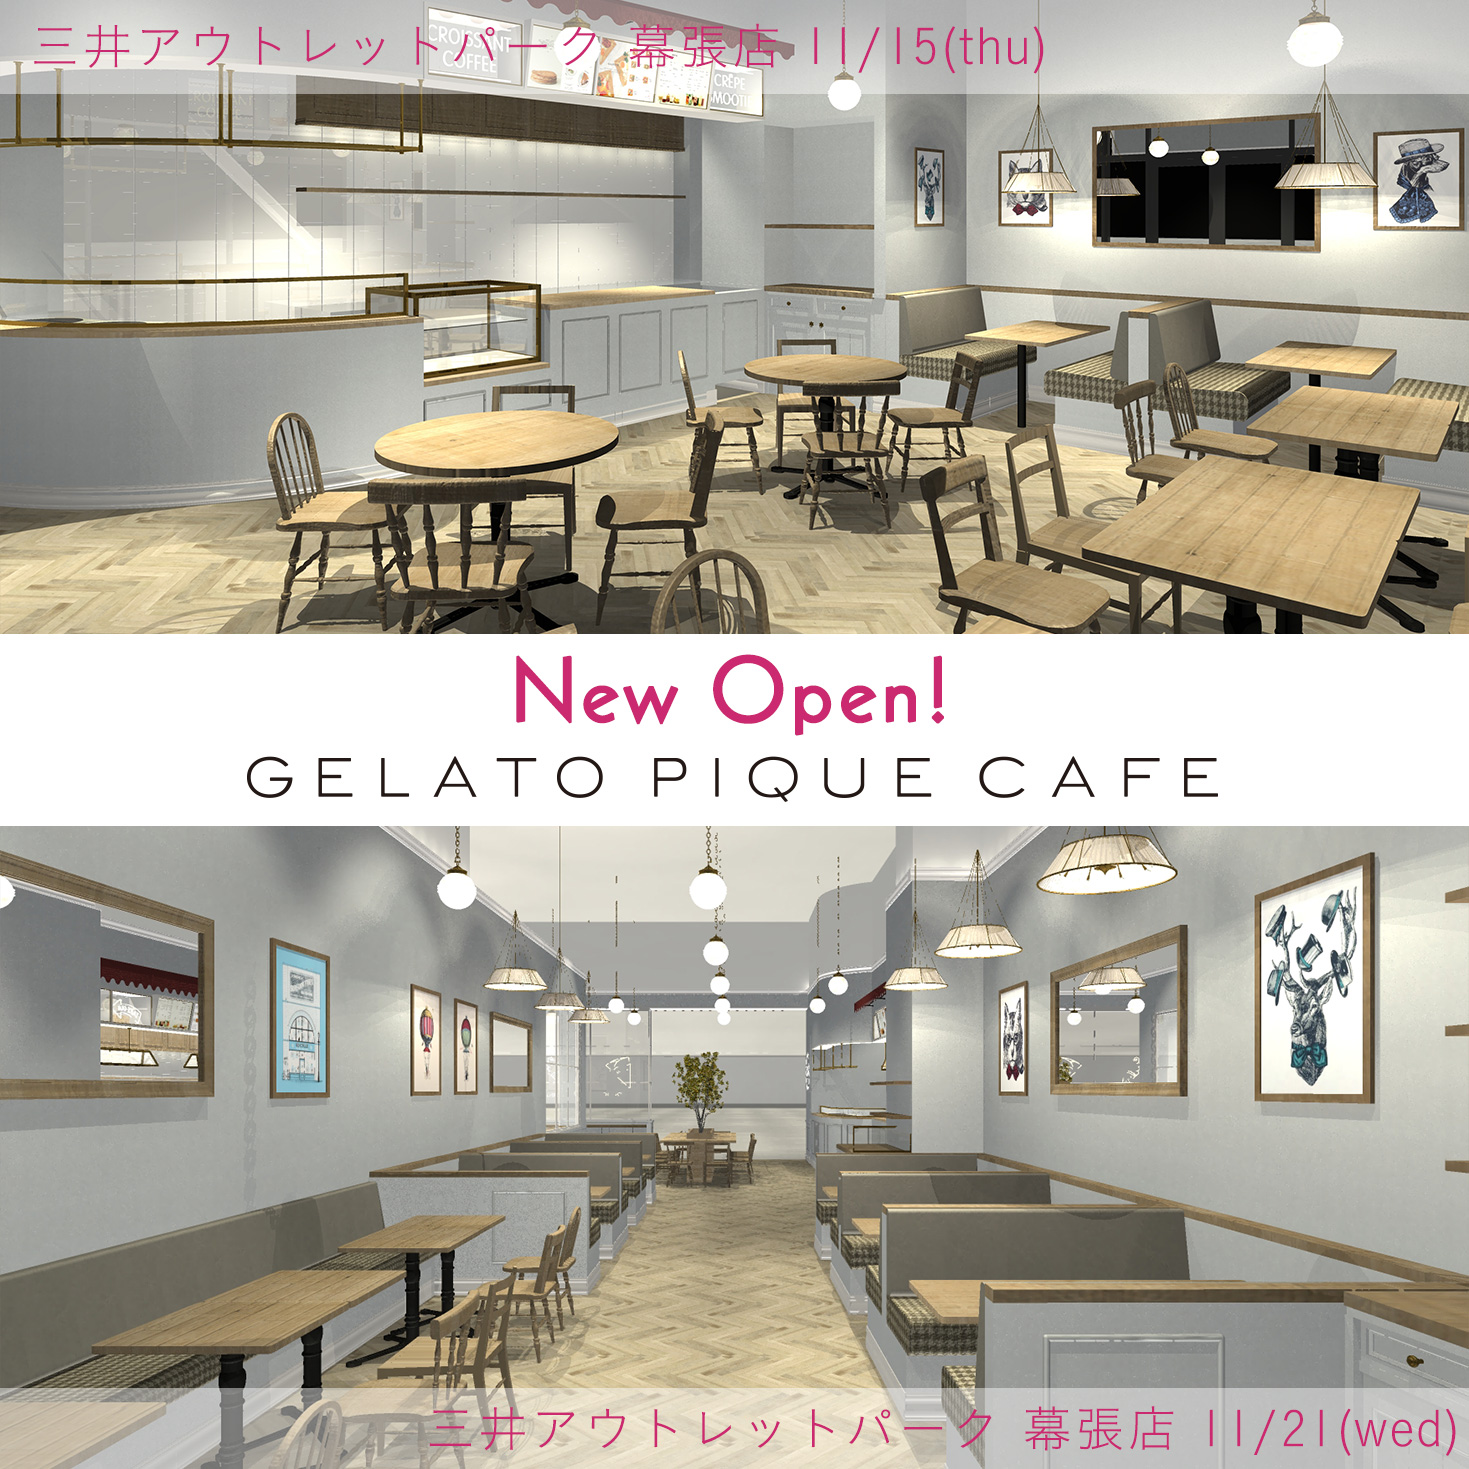 New Open! GELATO PIQUE CAFE